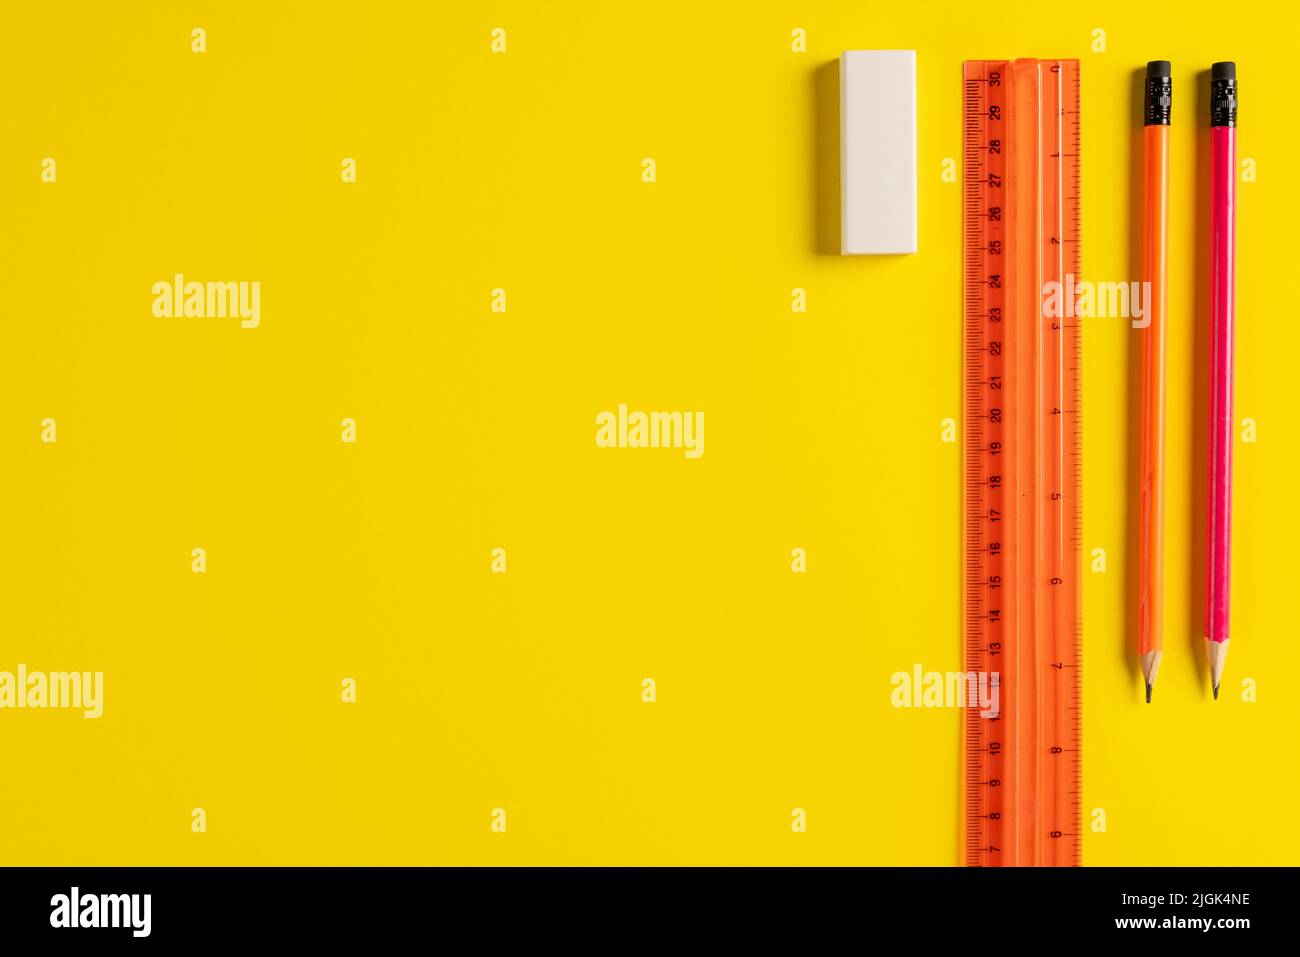 Image de crayons, gomme et règle sur fond jaune avec espace de copie Banque D'Images